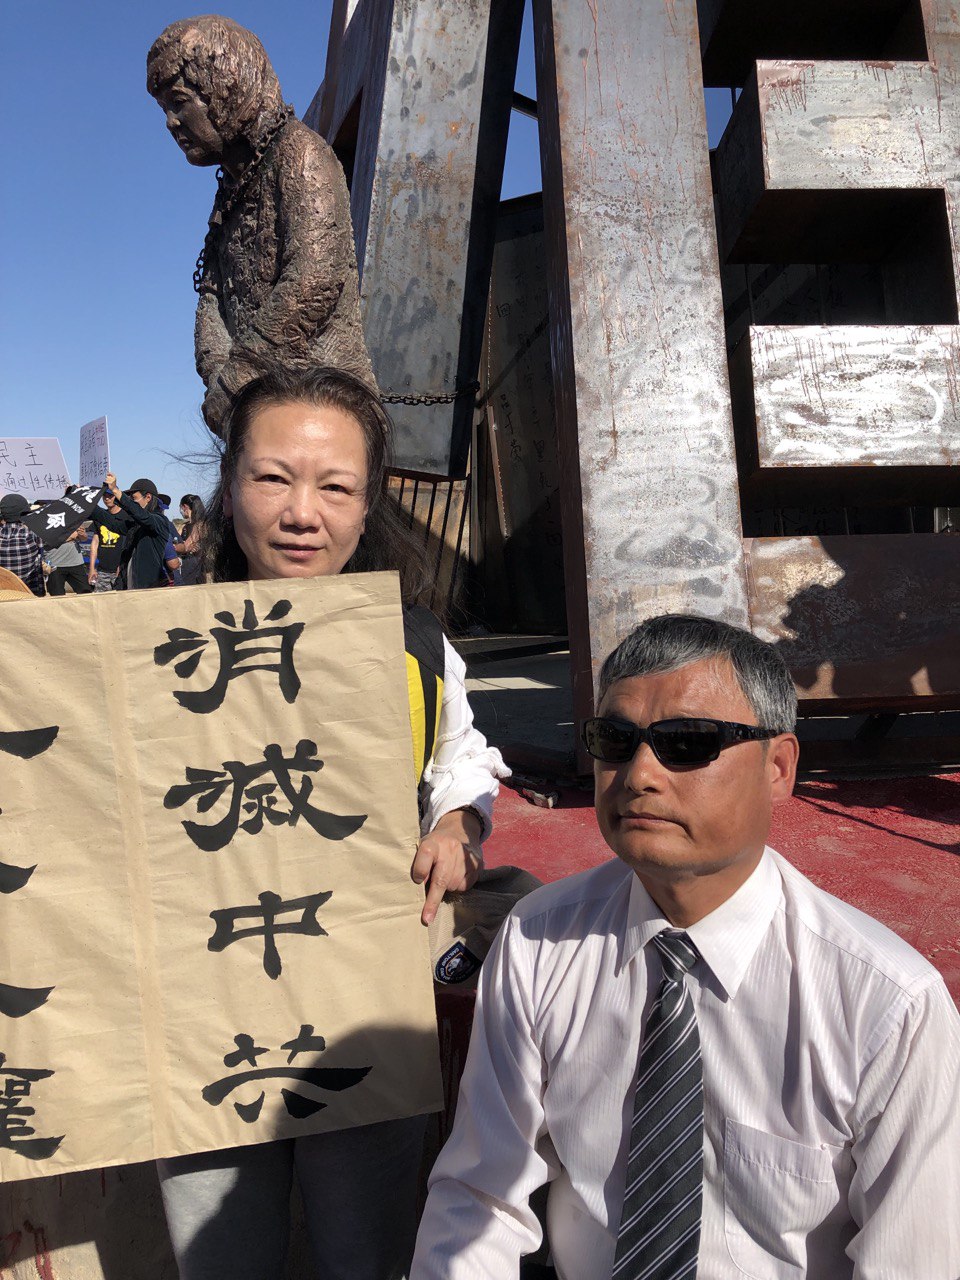 Ảnh chụp bà Lý Nãi Kỳ cùng ông Trần Quang Thành, một nhà hoạt động nhân quyền Trung Quốc nổi tiếng. (Ảnh do người được phỏng vấn cung cấp)